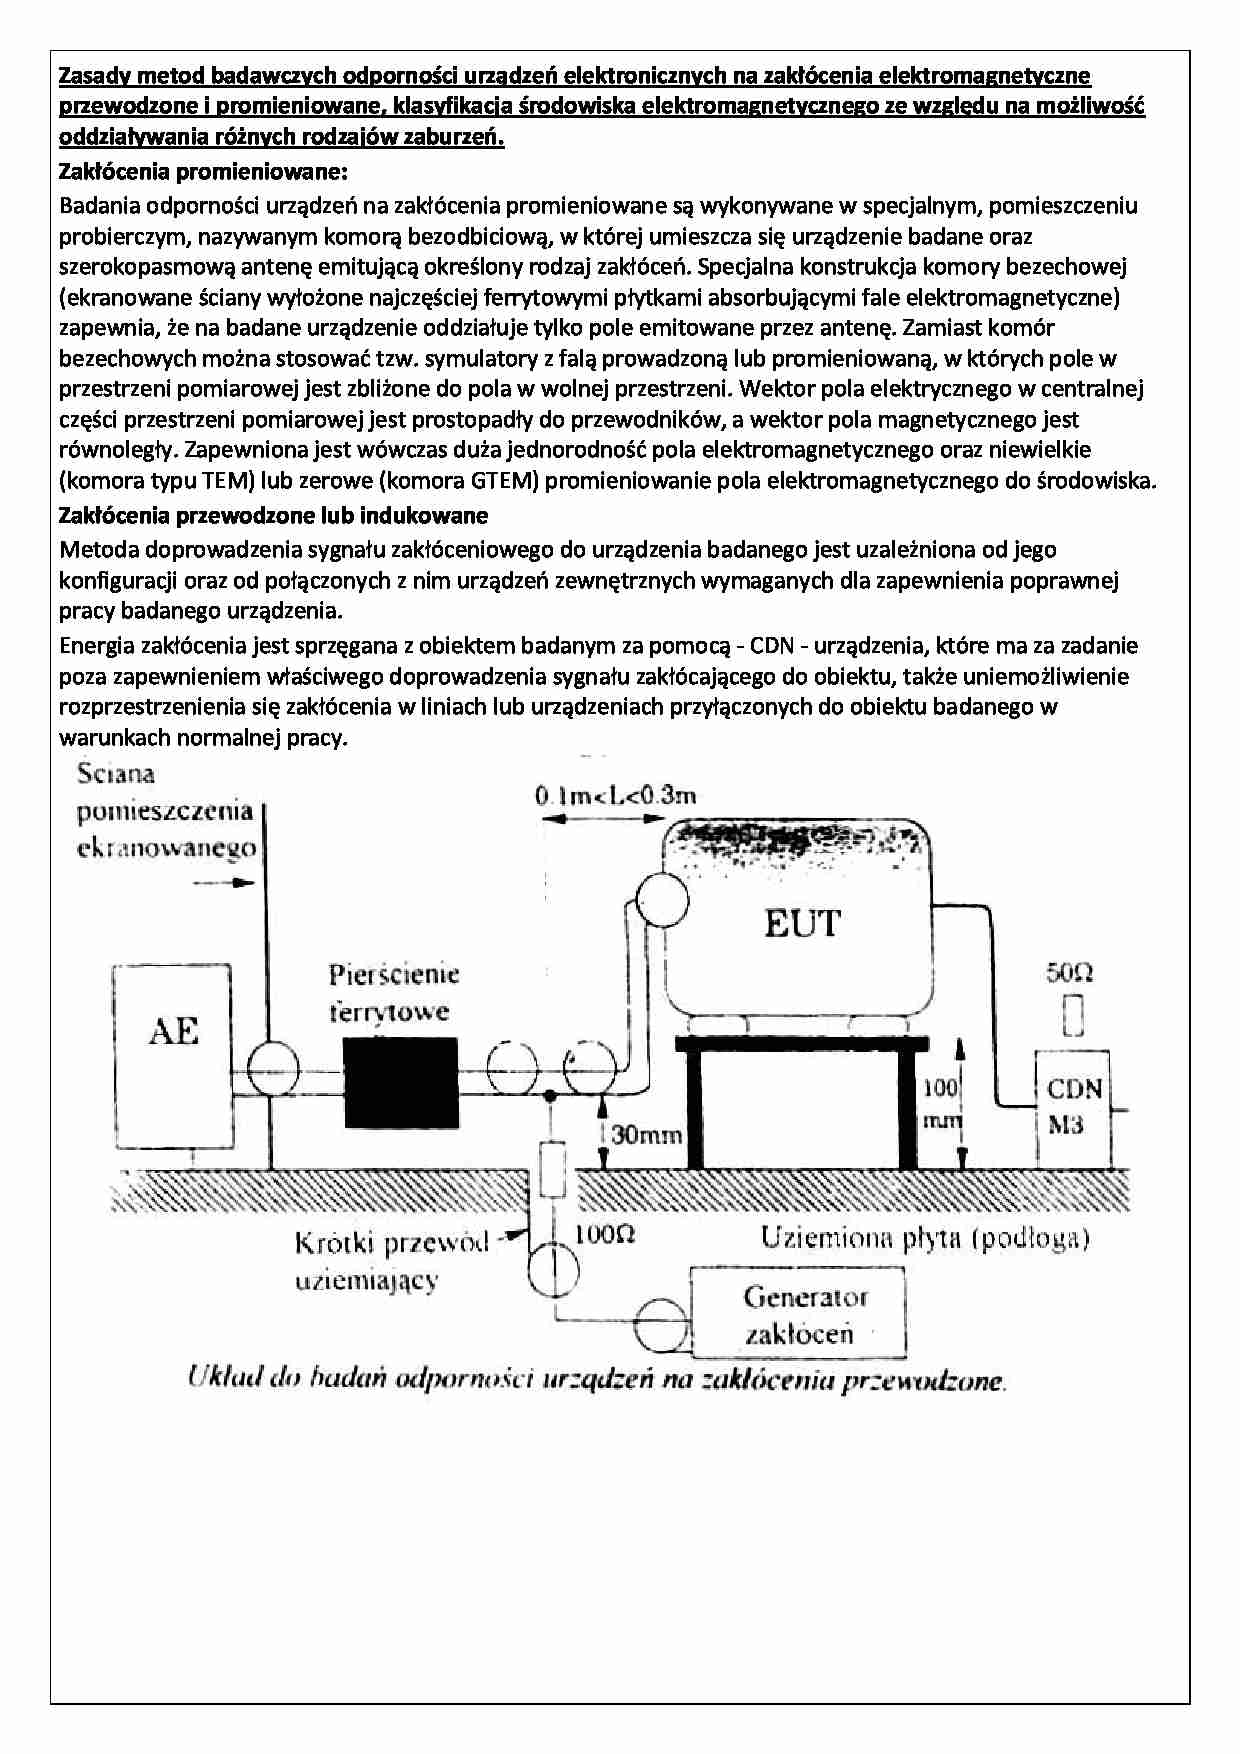 Zasady metod badawczych odporności urządzeń elektronicznych na zakłócenia elektromagnetyczne - strona 1